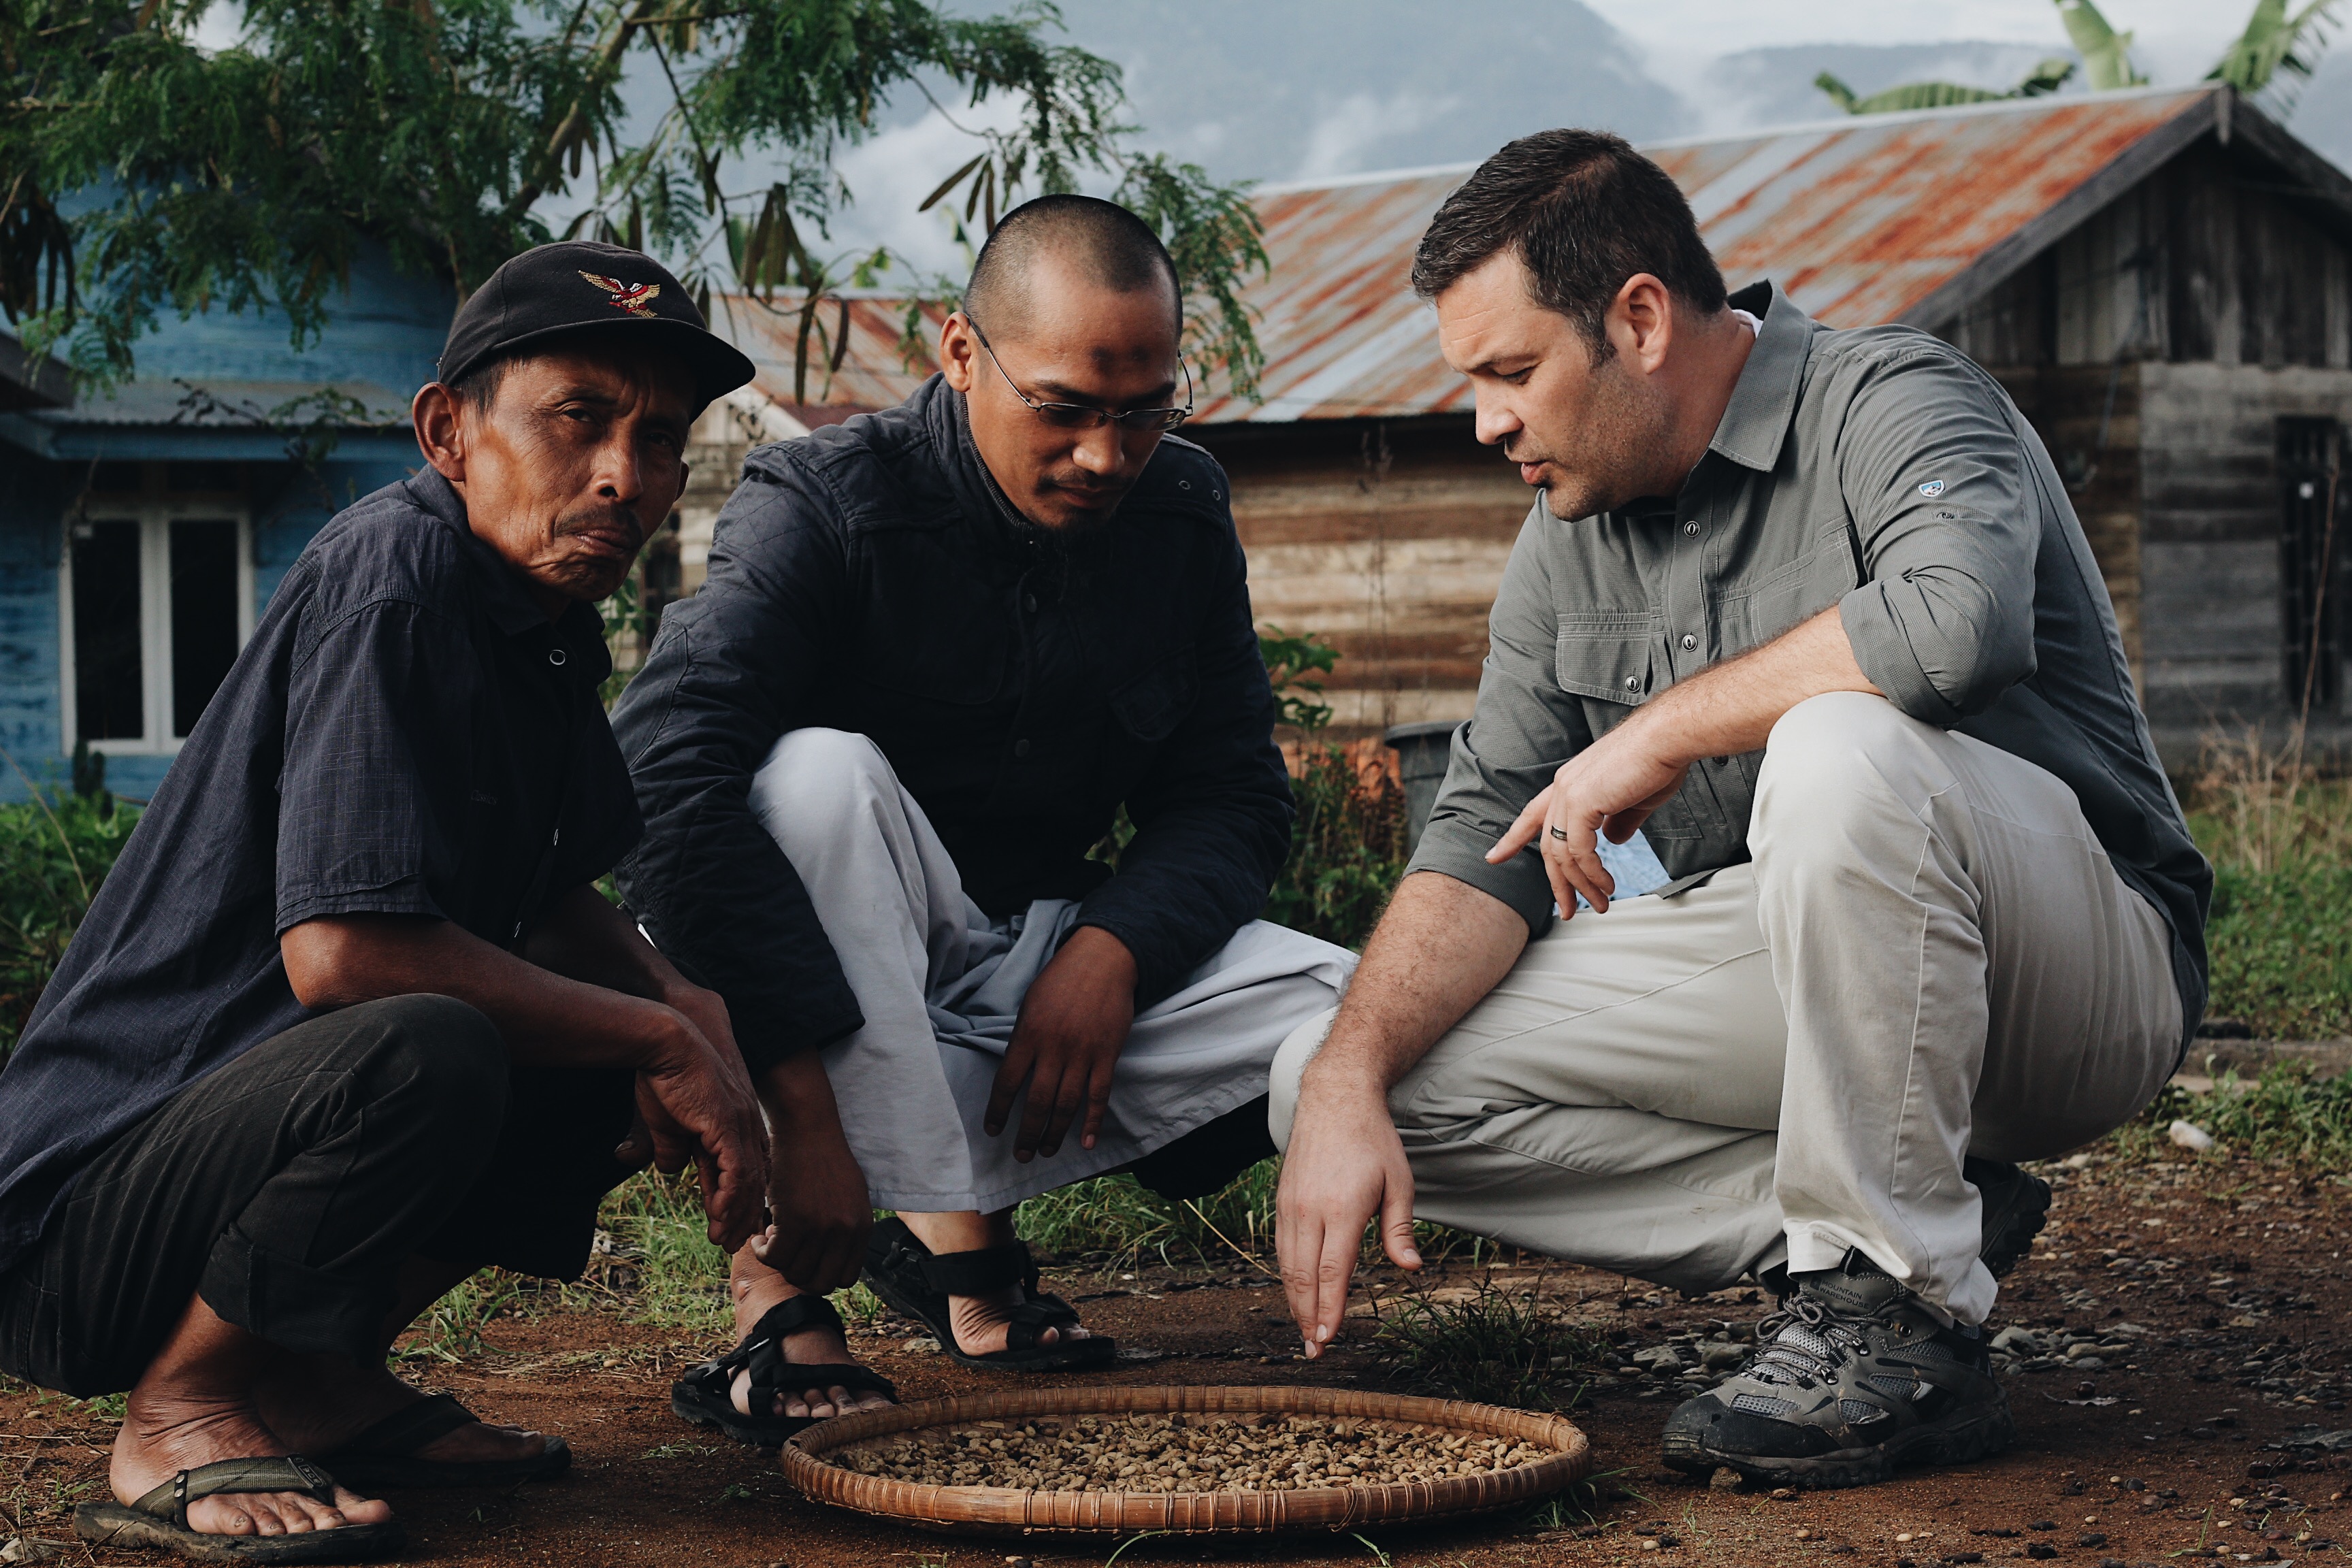 Jeff Bickley, Ade & Salamat Discussing Wild Kopi Luwak in Sumatra Indonesia